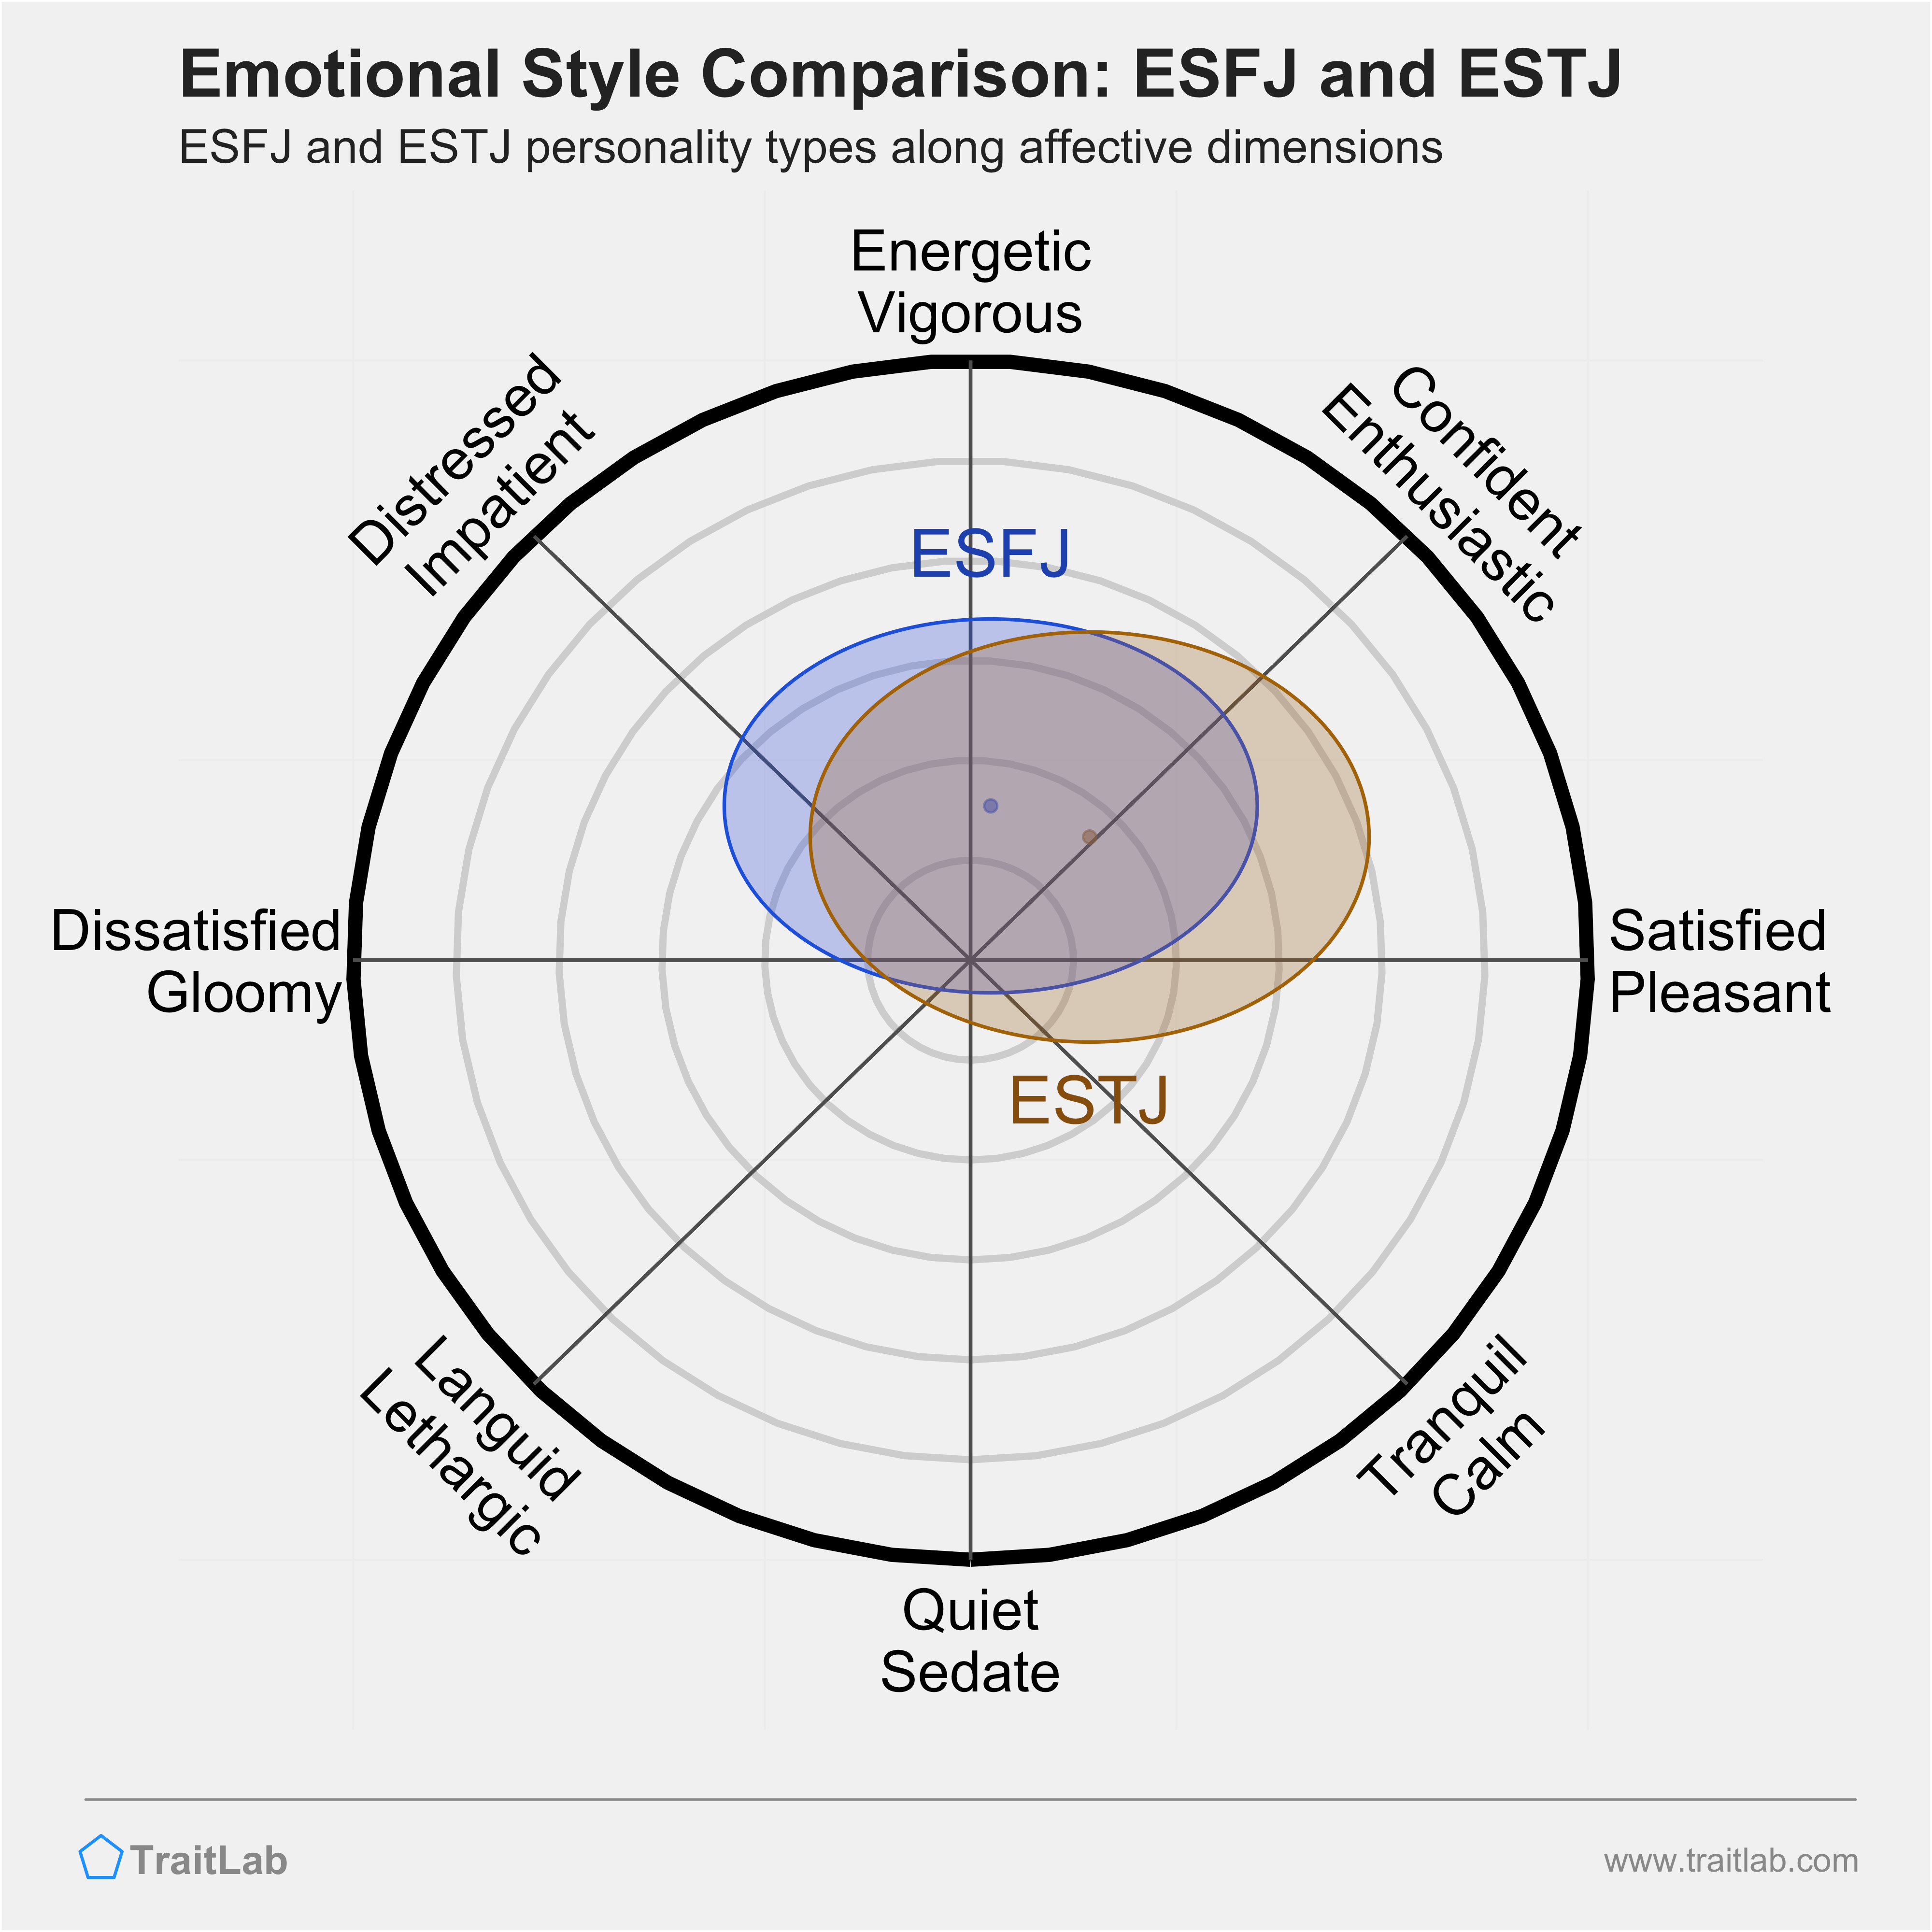 ESFJ and ESTJ comparison across emotional (affective) dimensions